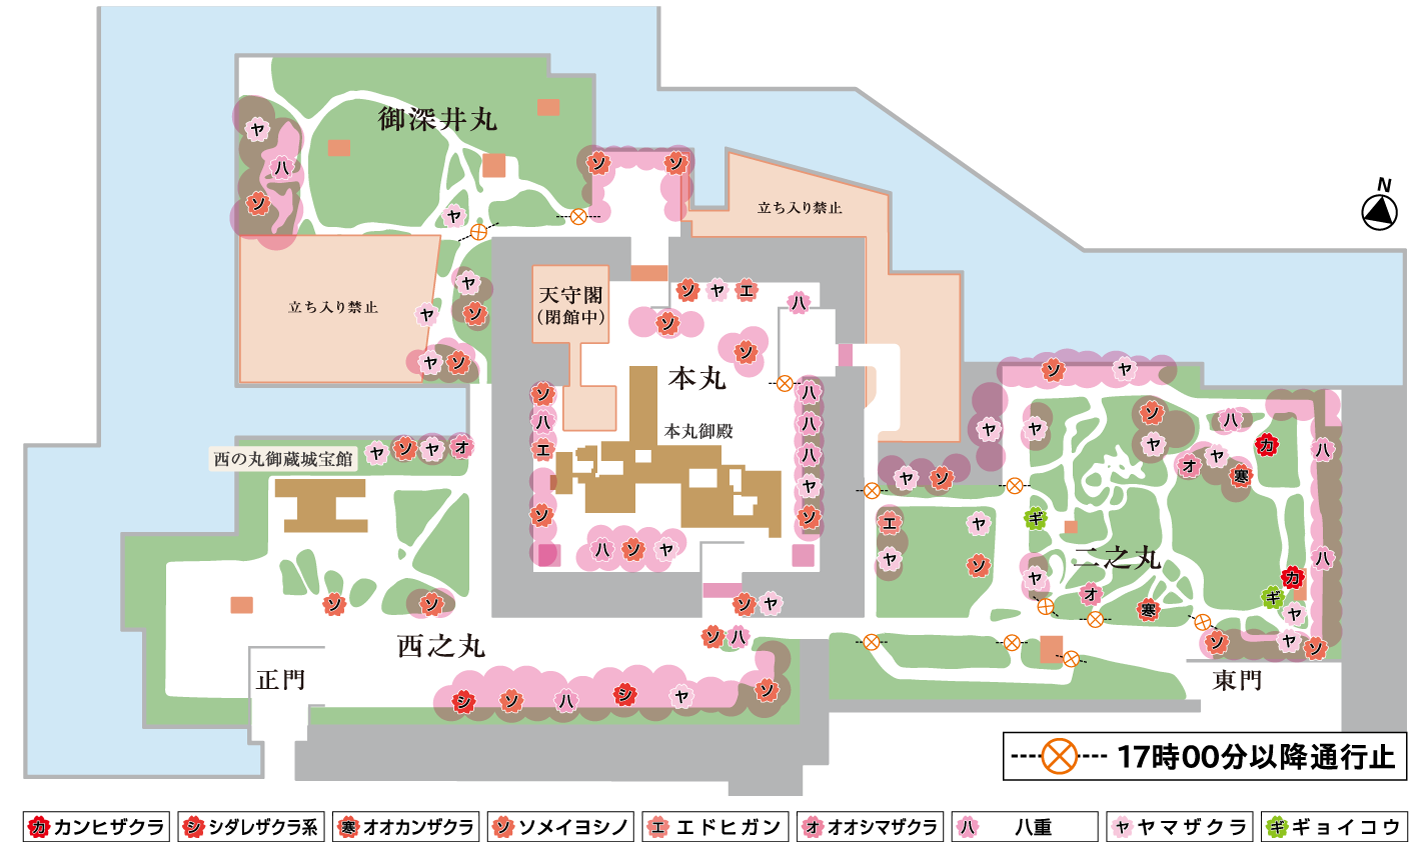 「名古屋城」に咲く桜のマップ